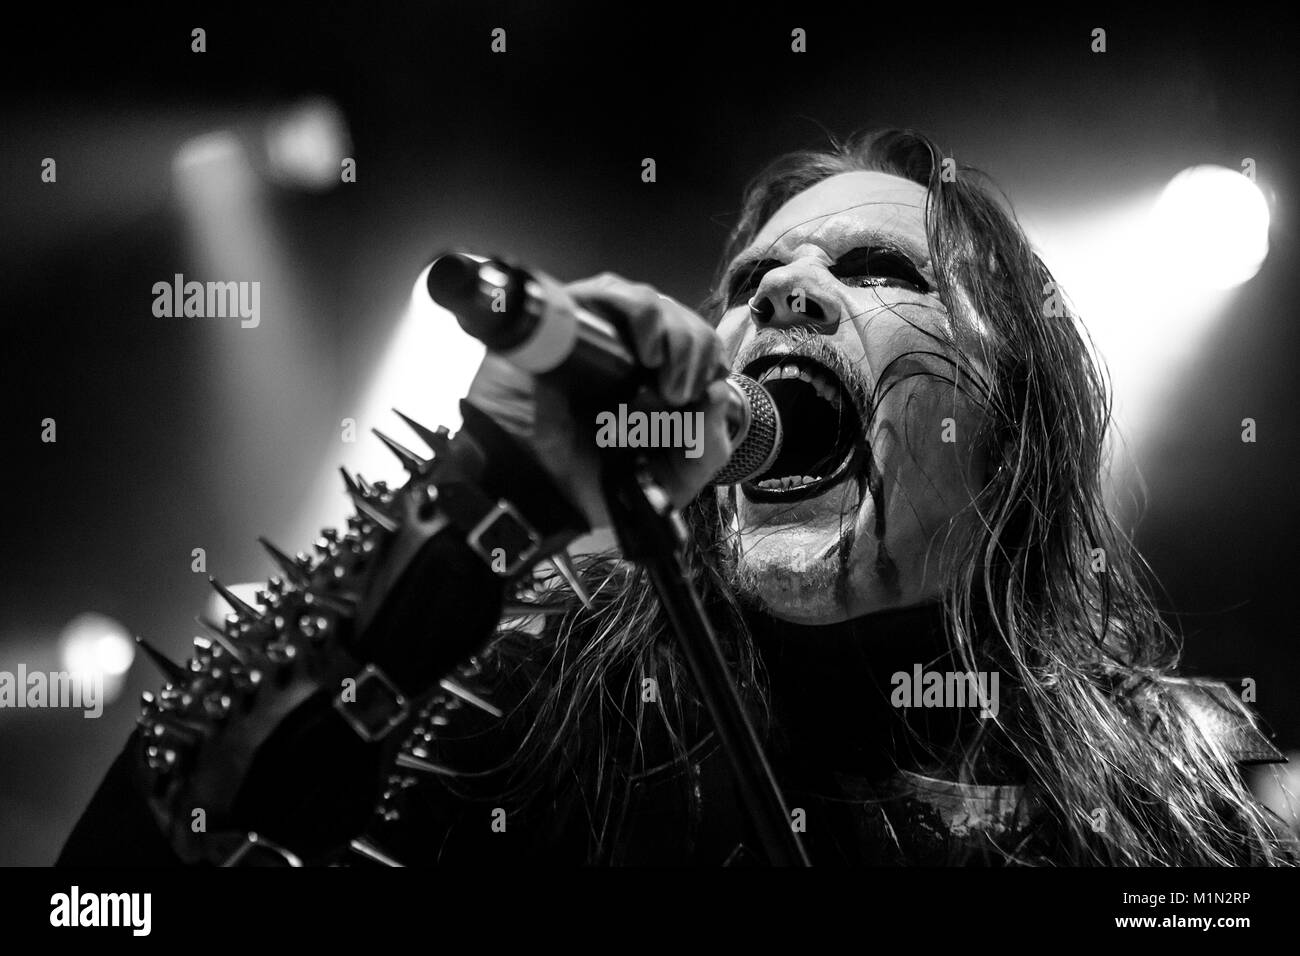 La svedese black metal band dark funerale esegue un concerto dal vivo  presso il norvegese heavy metal festival Blastfest 2015 a Bergen. Qui la  cantante Heljamadr è visto dal vivo sul palco.